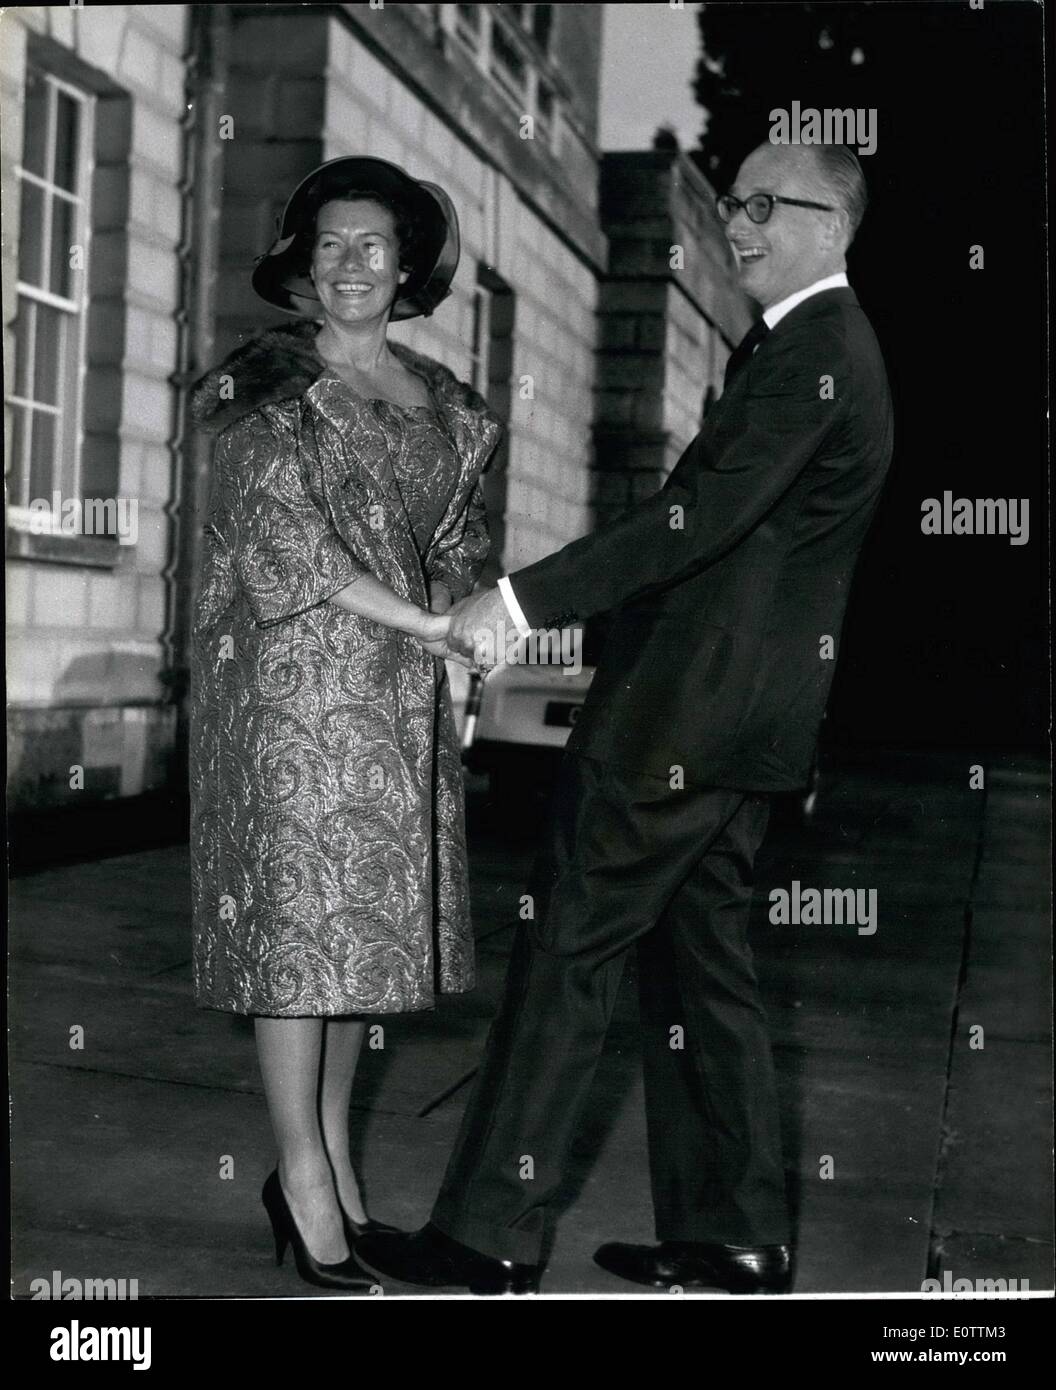 Septembre 09, 1960 - Le Duc de Bedford se marie ; les 43 ans duc de Bedford s'est mariée hier, à 40 ans, Mme Nicole Milinair Français, producteur de télévision, à l'Office à Ampthill, Bedfordshire. Photo montre heureux photo du duc de Bedford et son épouse, à l'abbaye de Woburn, le Duke's home hier. Banque D'Images